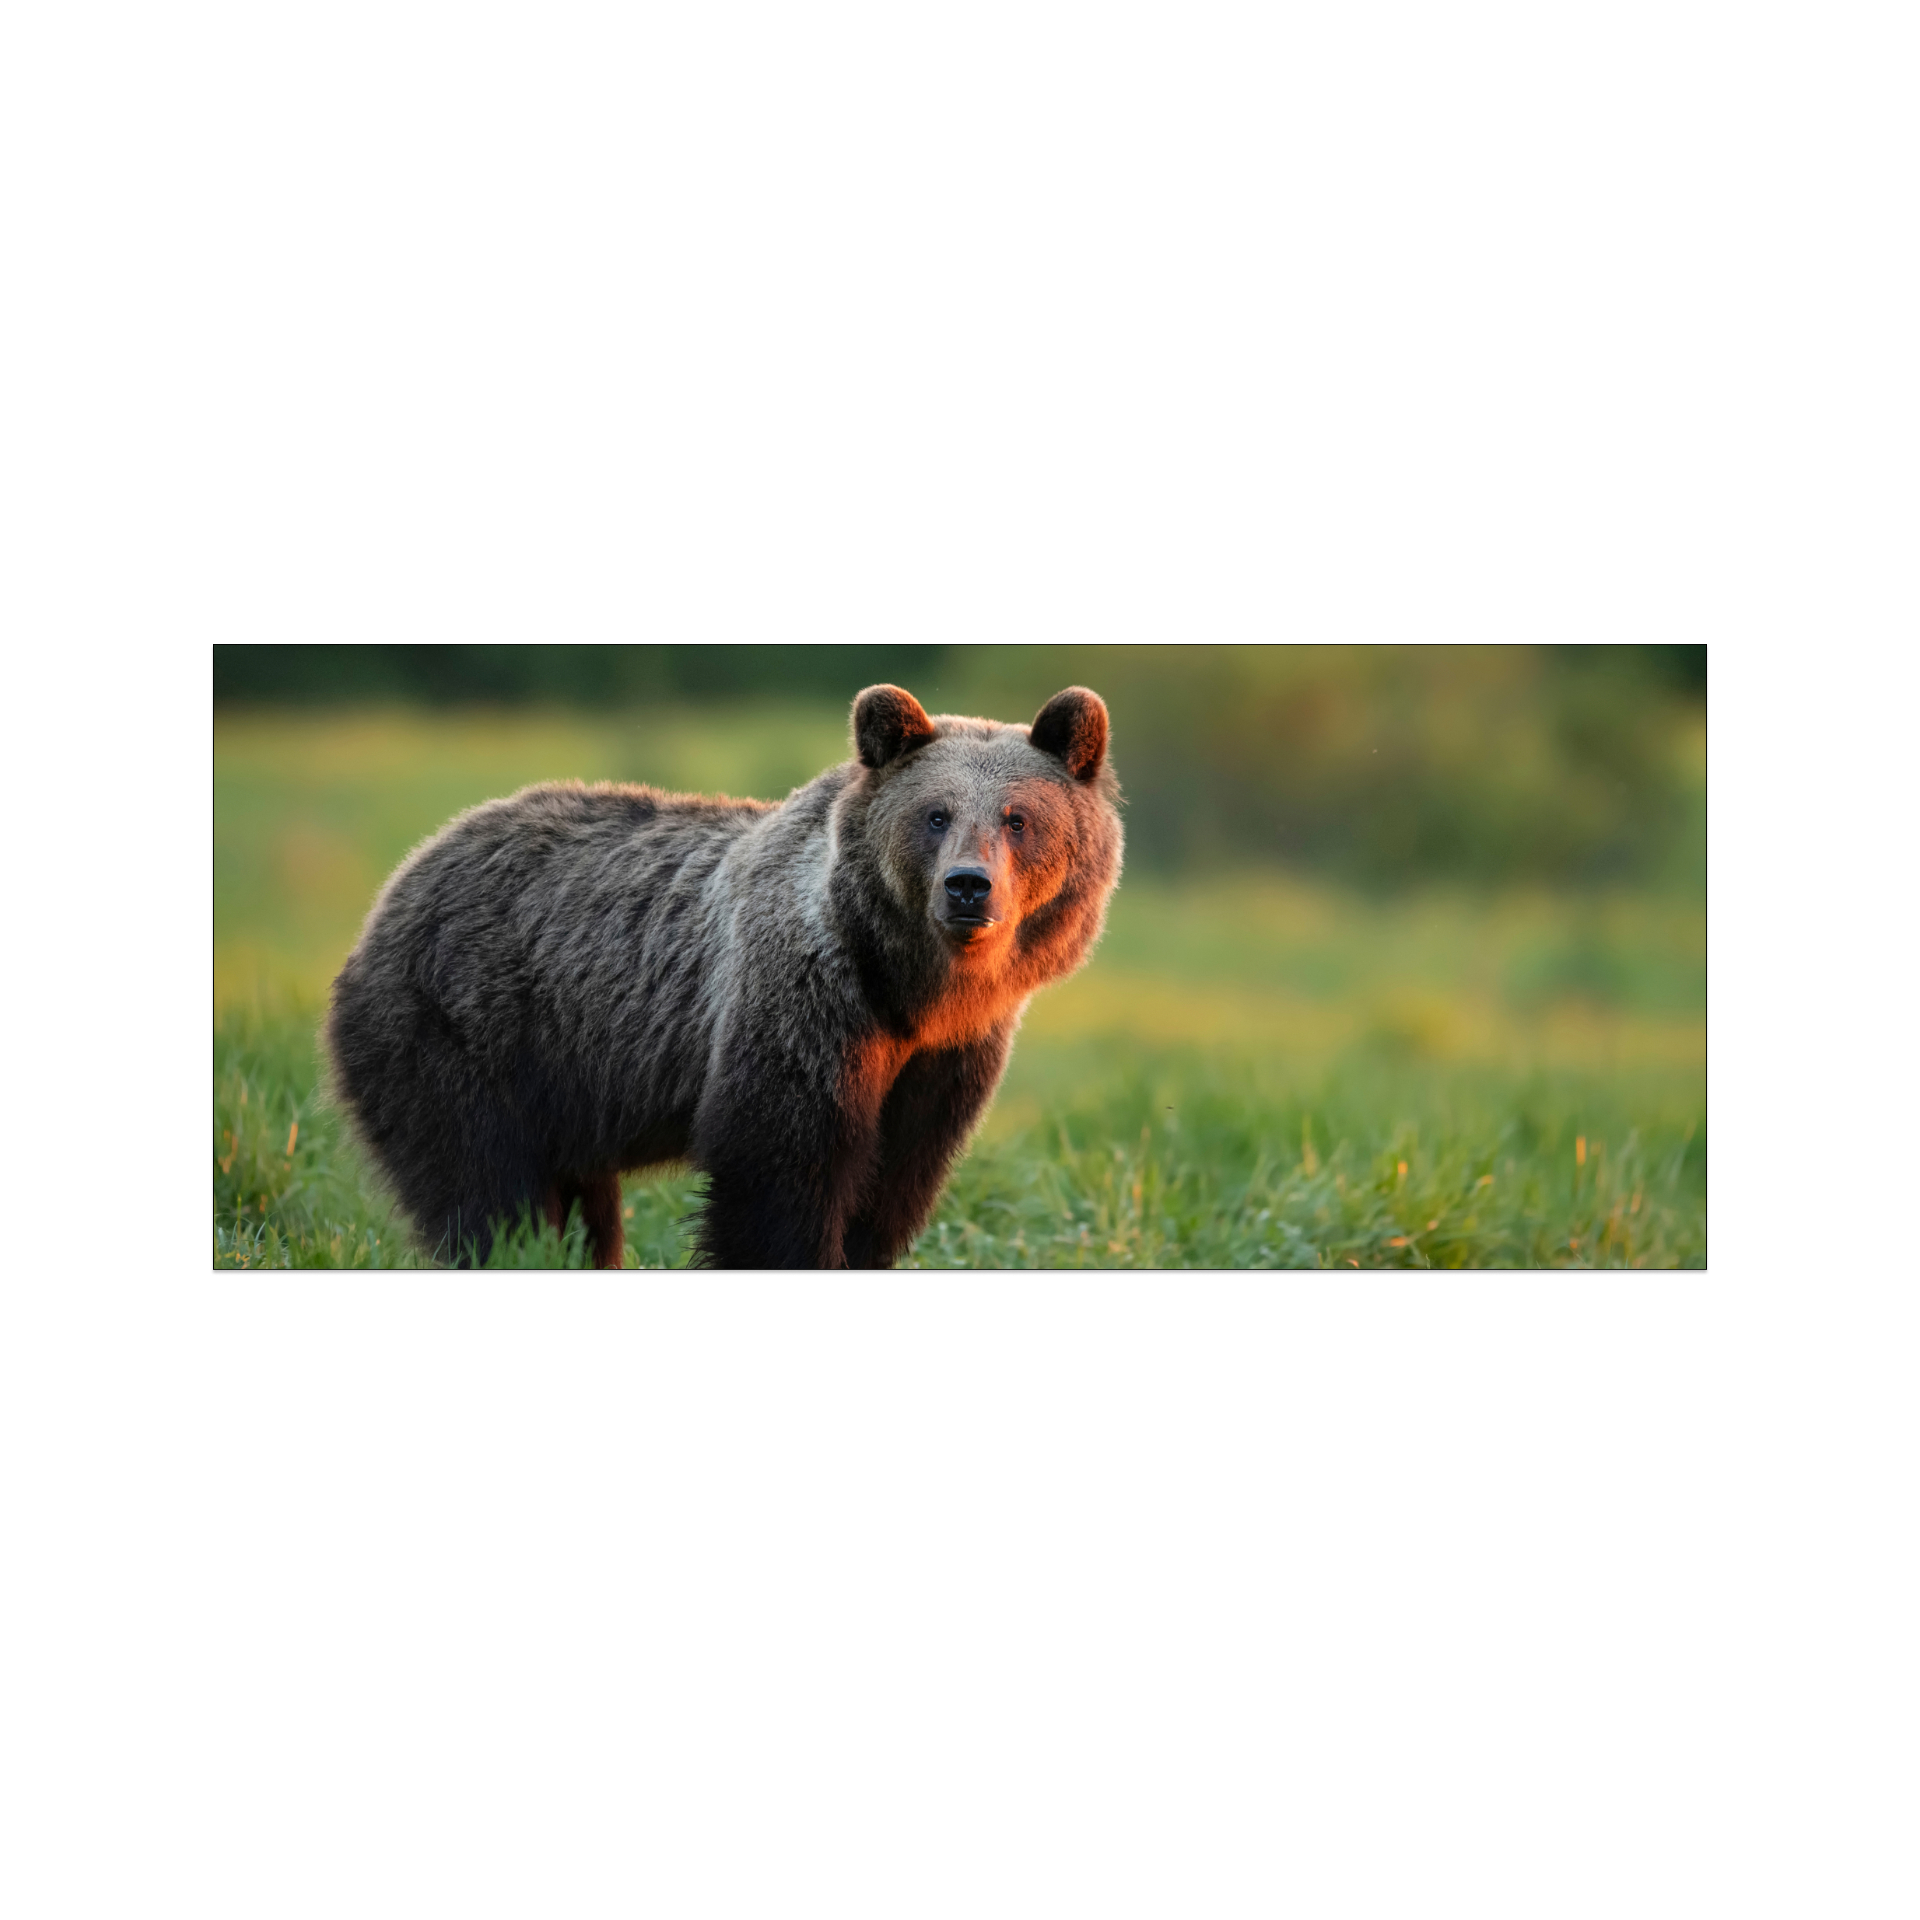 Brązowy, puszysty niedźwiedź stojący pośród zielonej trawy